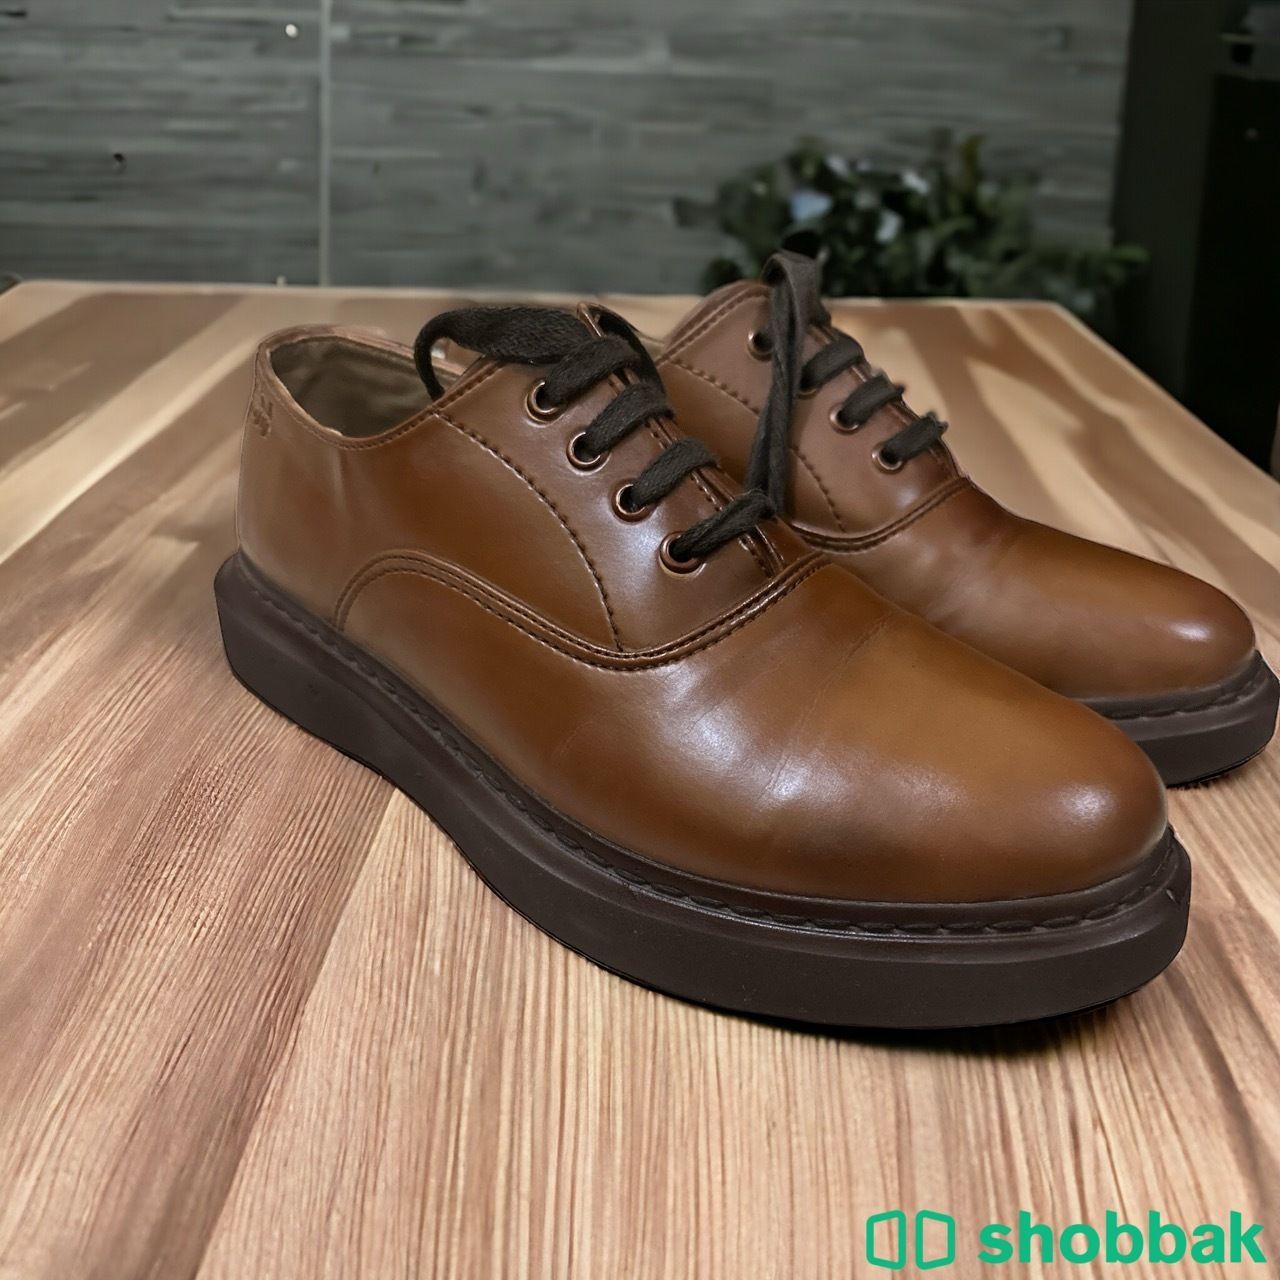 حذاء لون بنى وبيج جلد راقى جدا  Shobbak Saudi Arabia